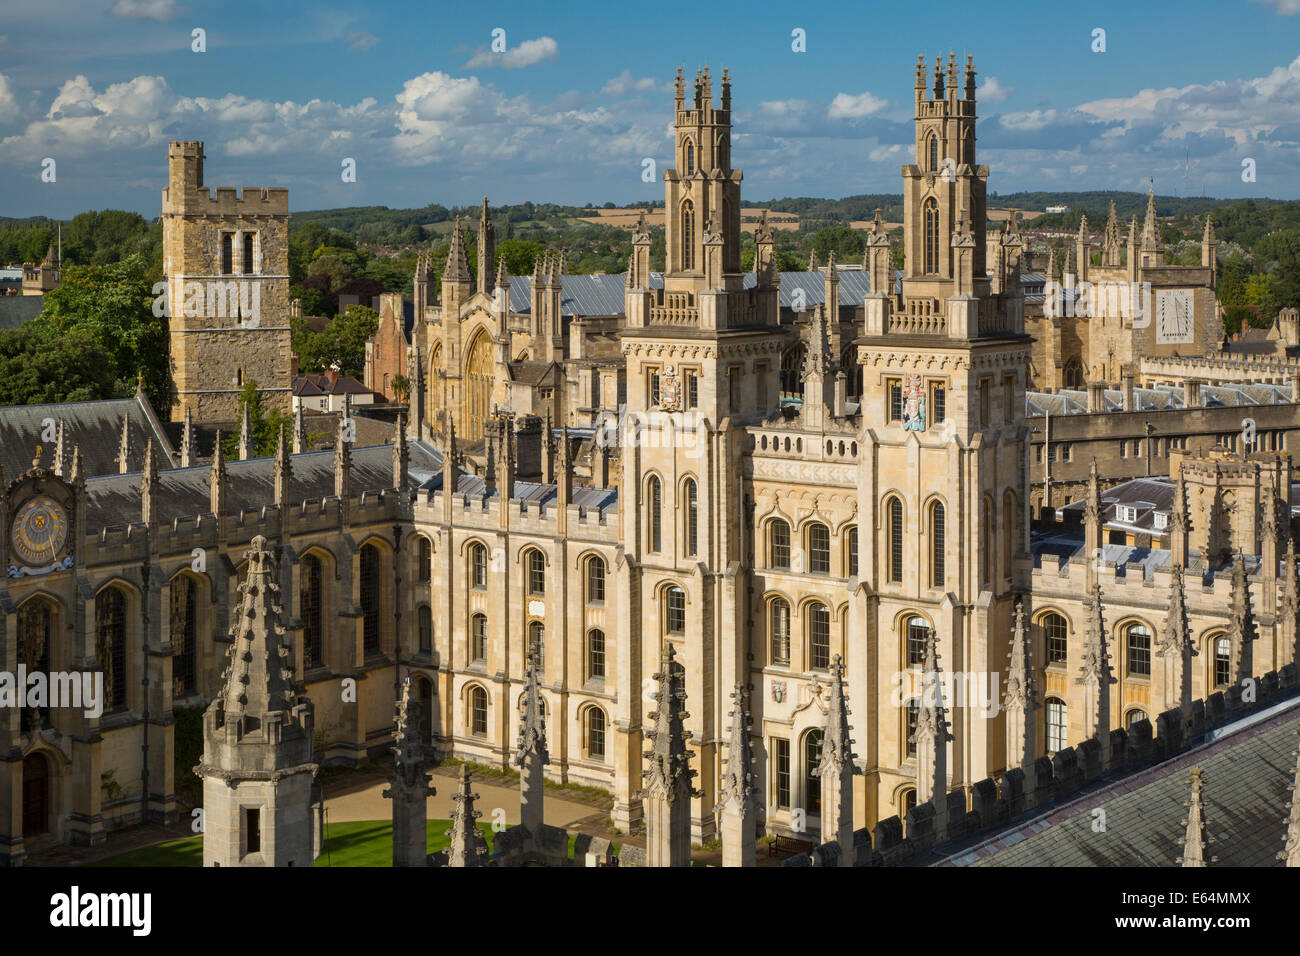 All Souls College et le nombre de spires de l'Université d'Oxford, Oxfordshire, Angleterre Banque D'Images